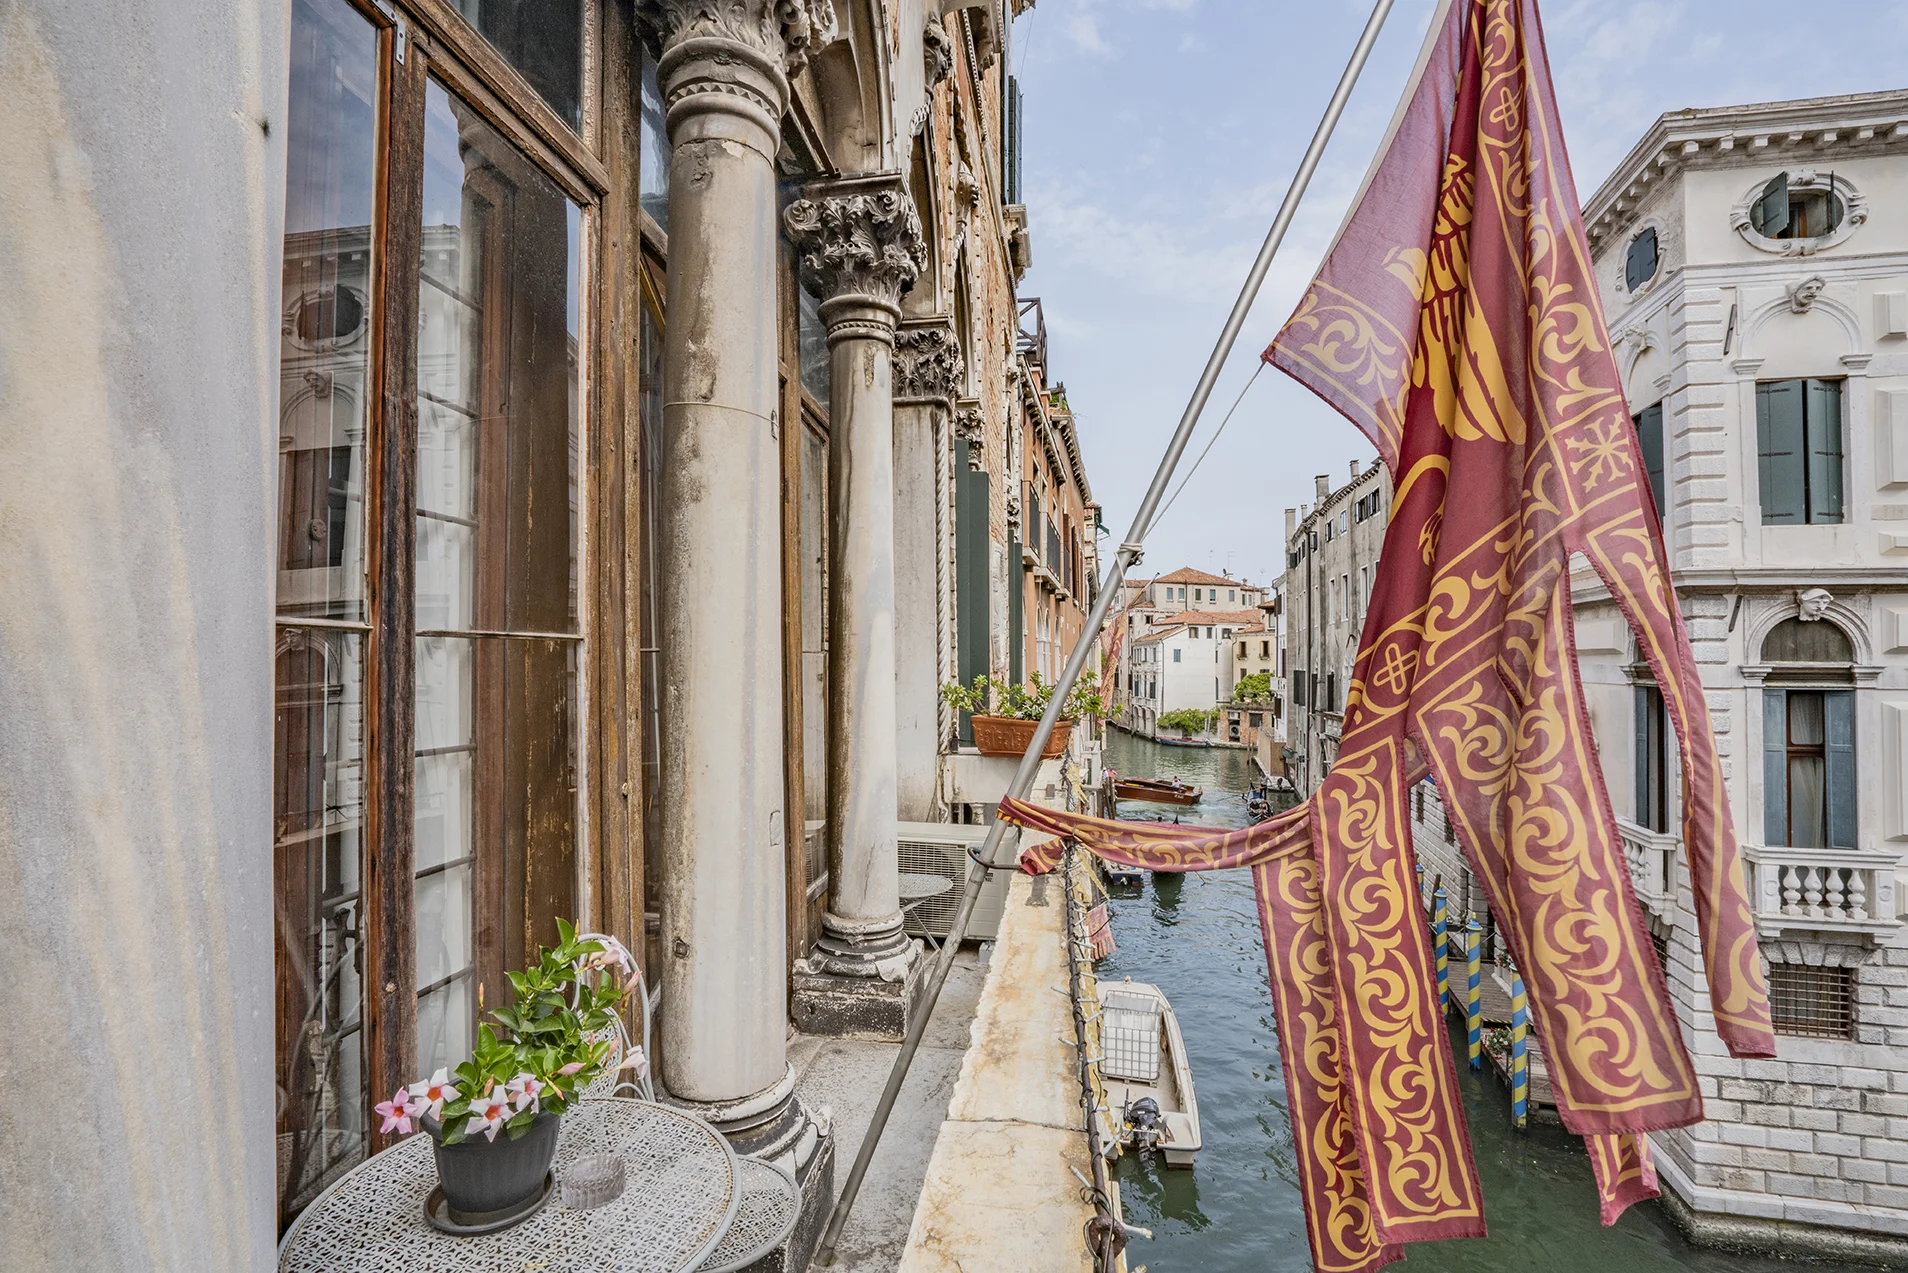 Palazzo in Venice, Italy